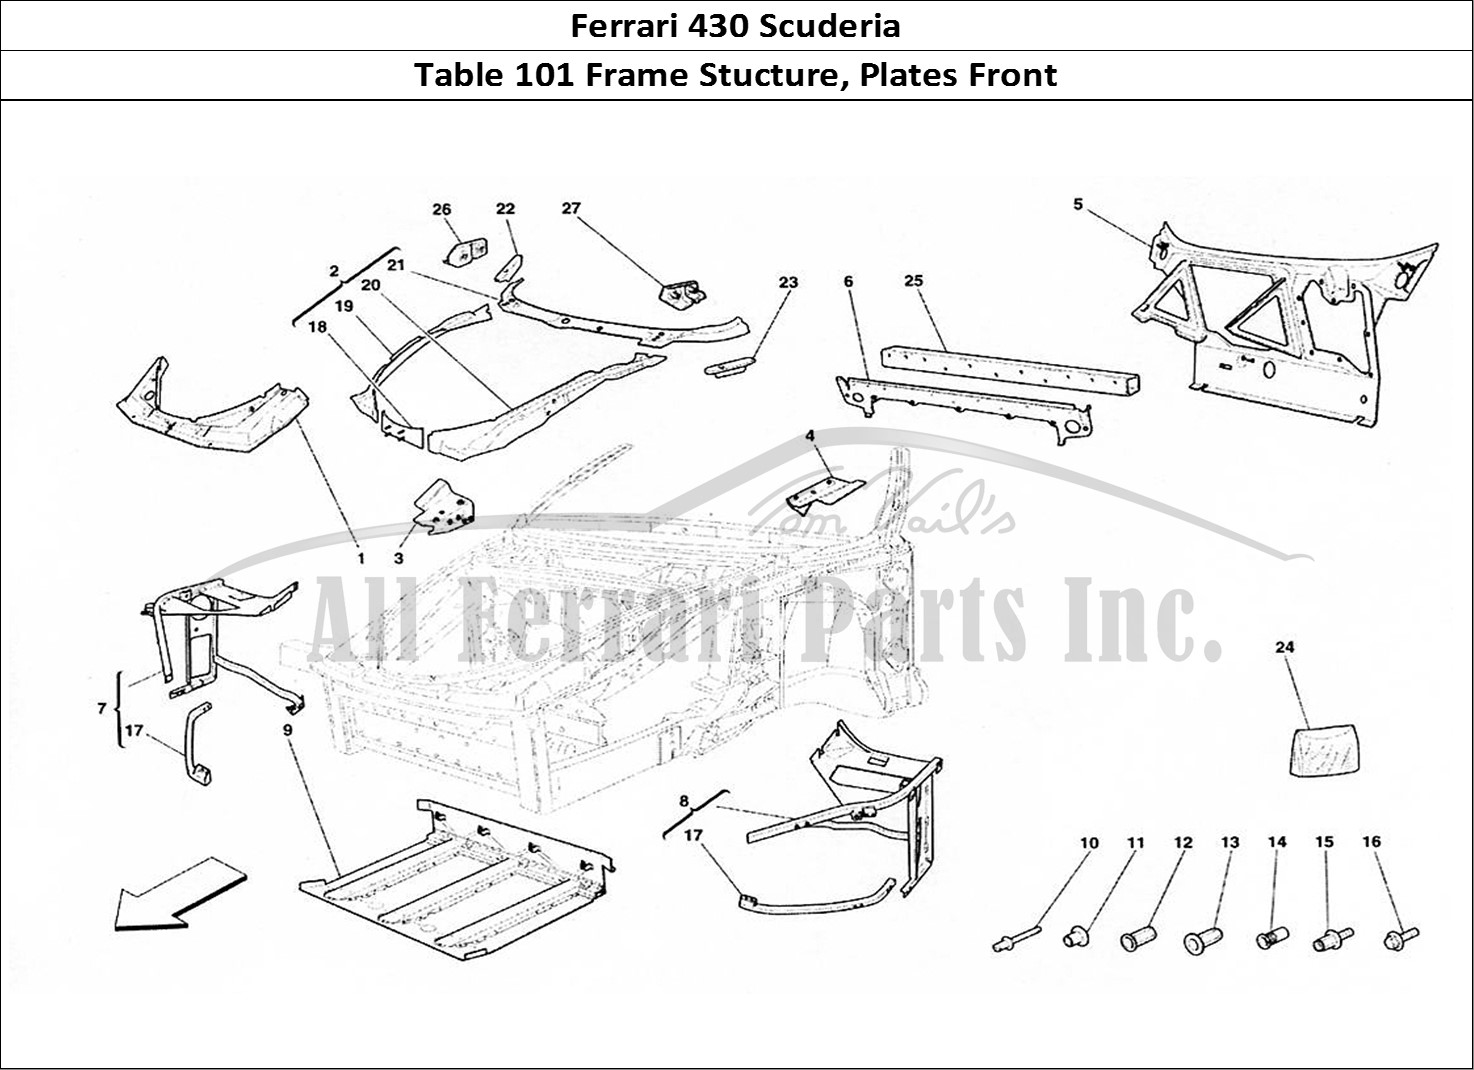 Ferrari Parts Ferrari 430 Scuderia Page 101 Complete Front Part Struc